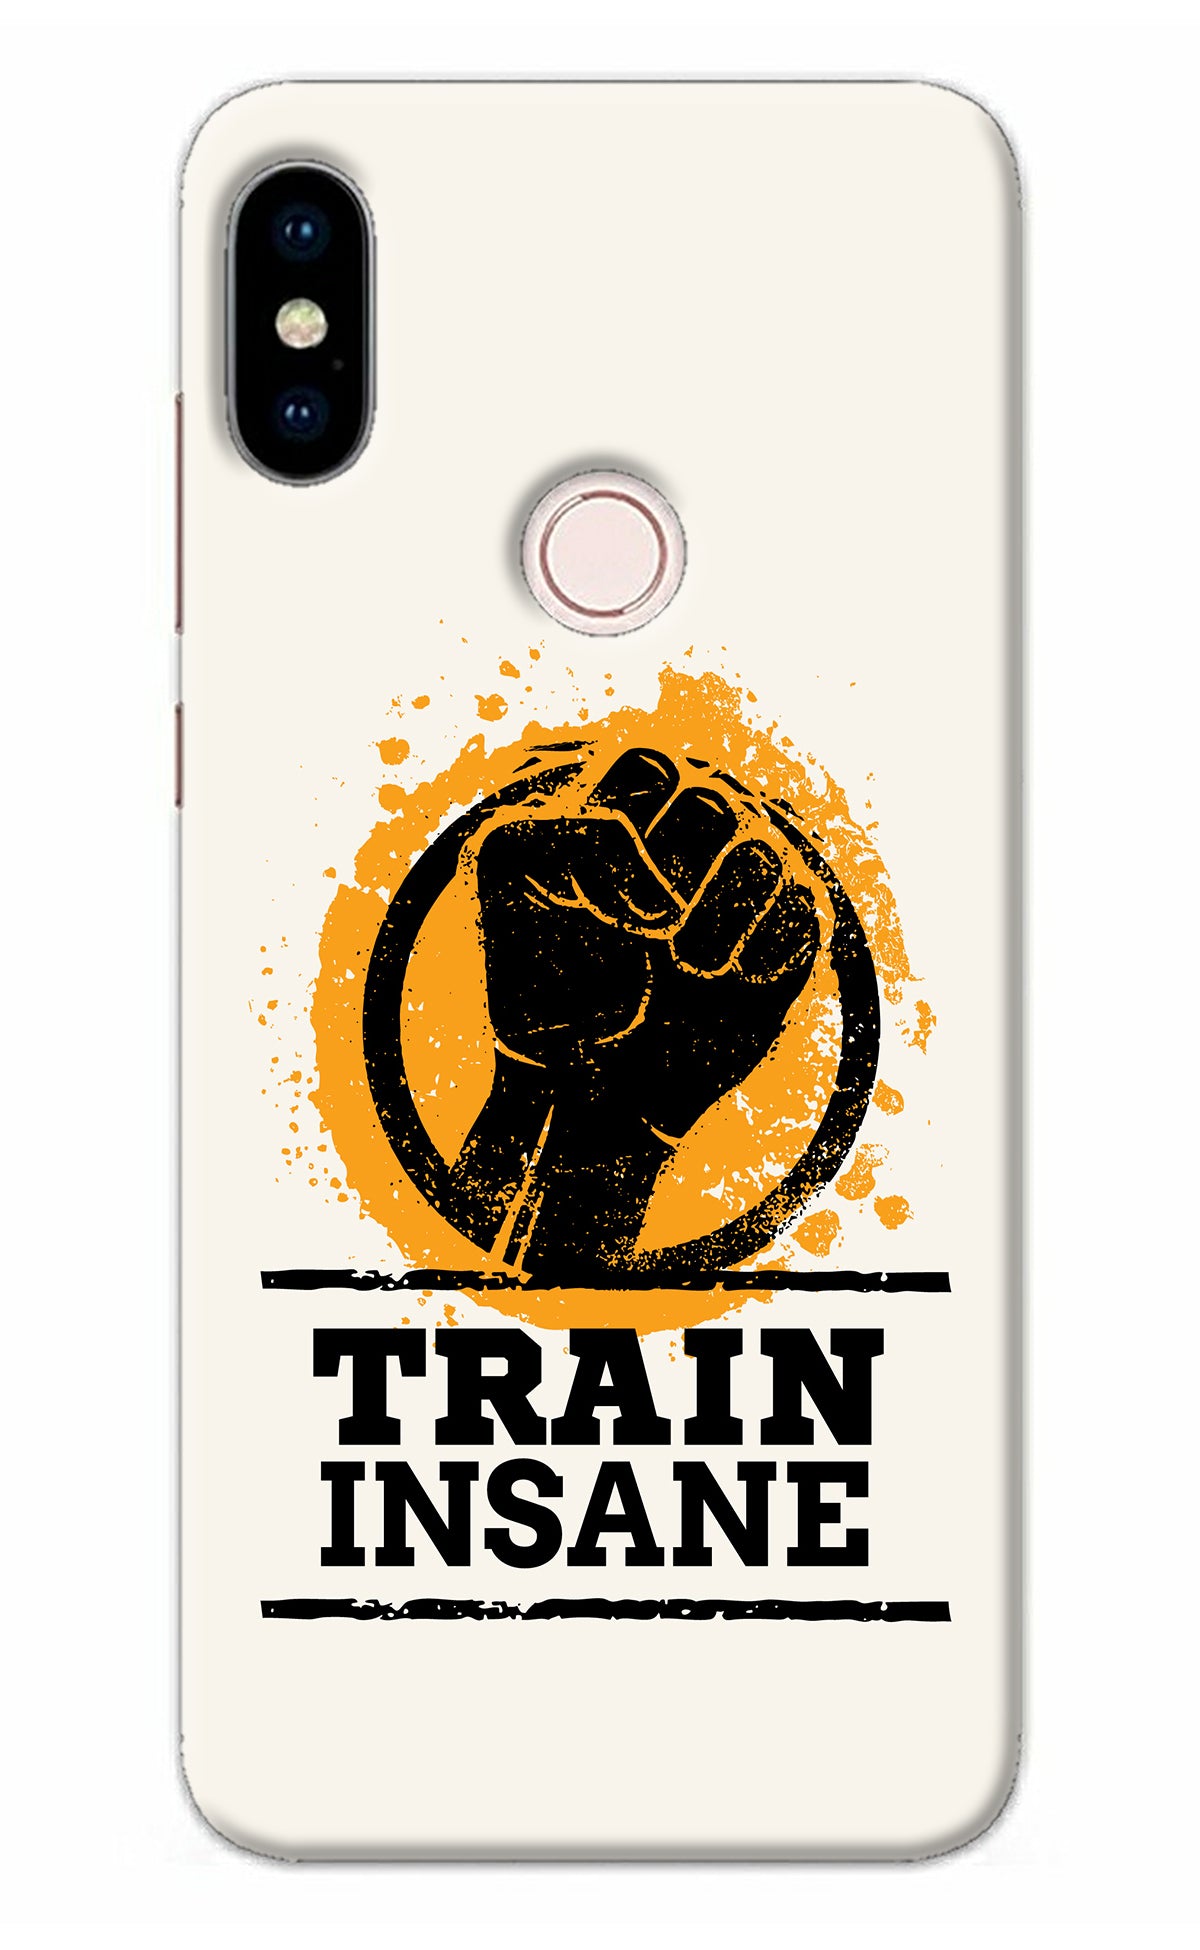 Train Insane Redmi Note 5 Pro Back Cover